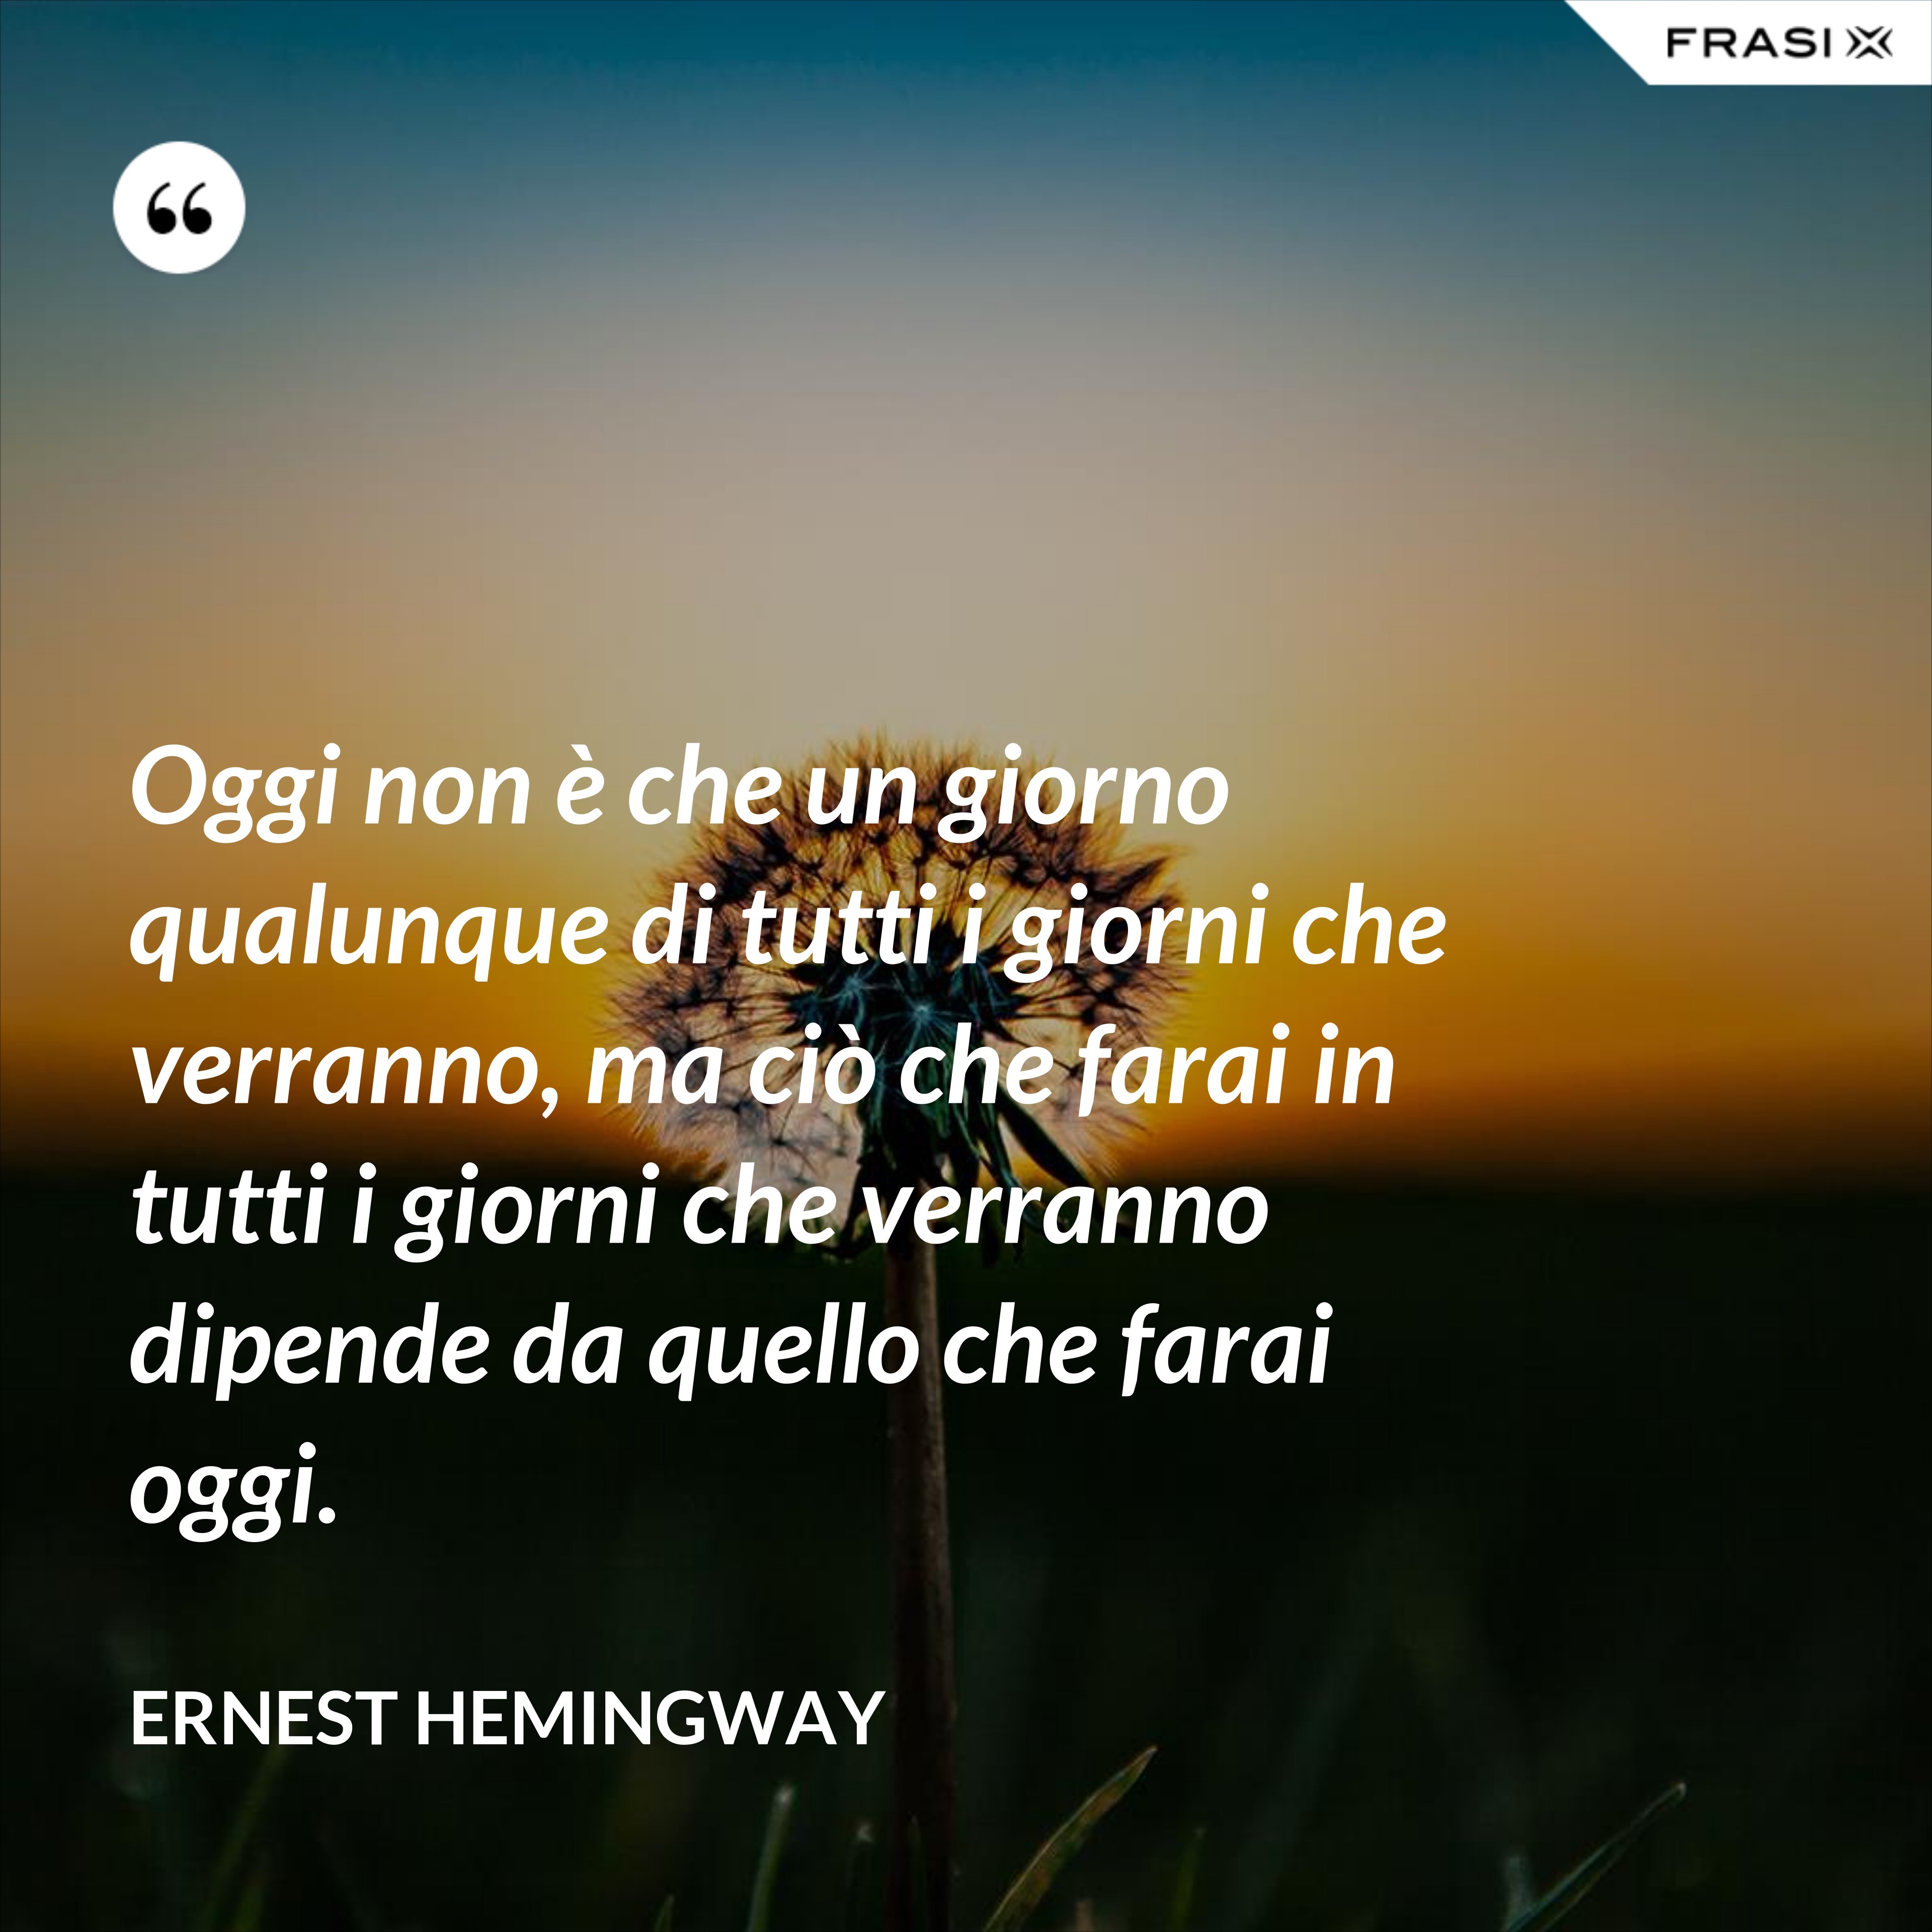 Oggi non è che un giorno qualunque di tutti i giorni che verranno, ma ciò che farai in tutti i giorni che verranno dipende da quello che farai oggi. - Ernest Hemingway